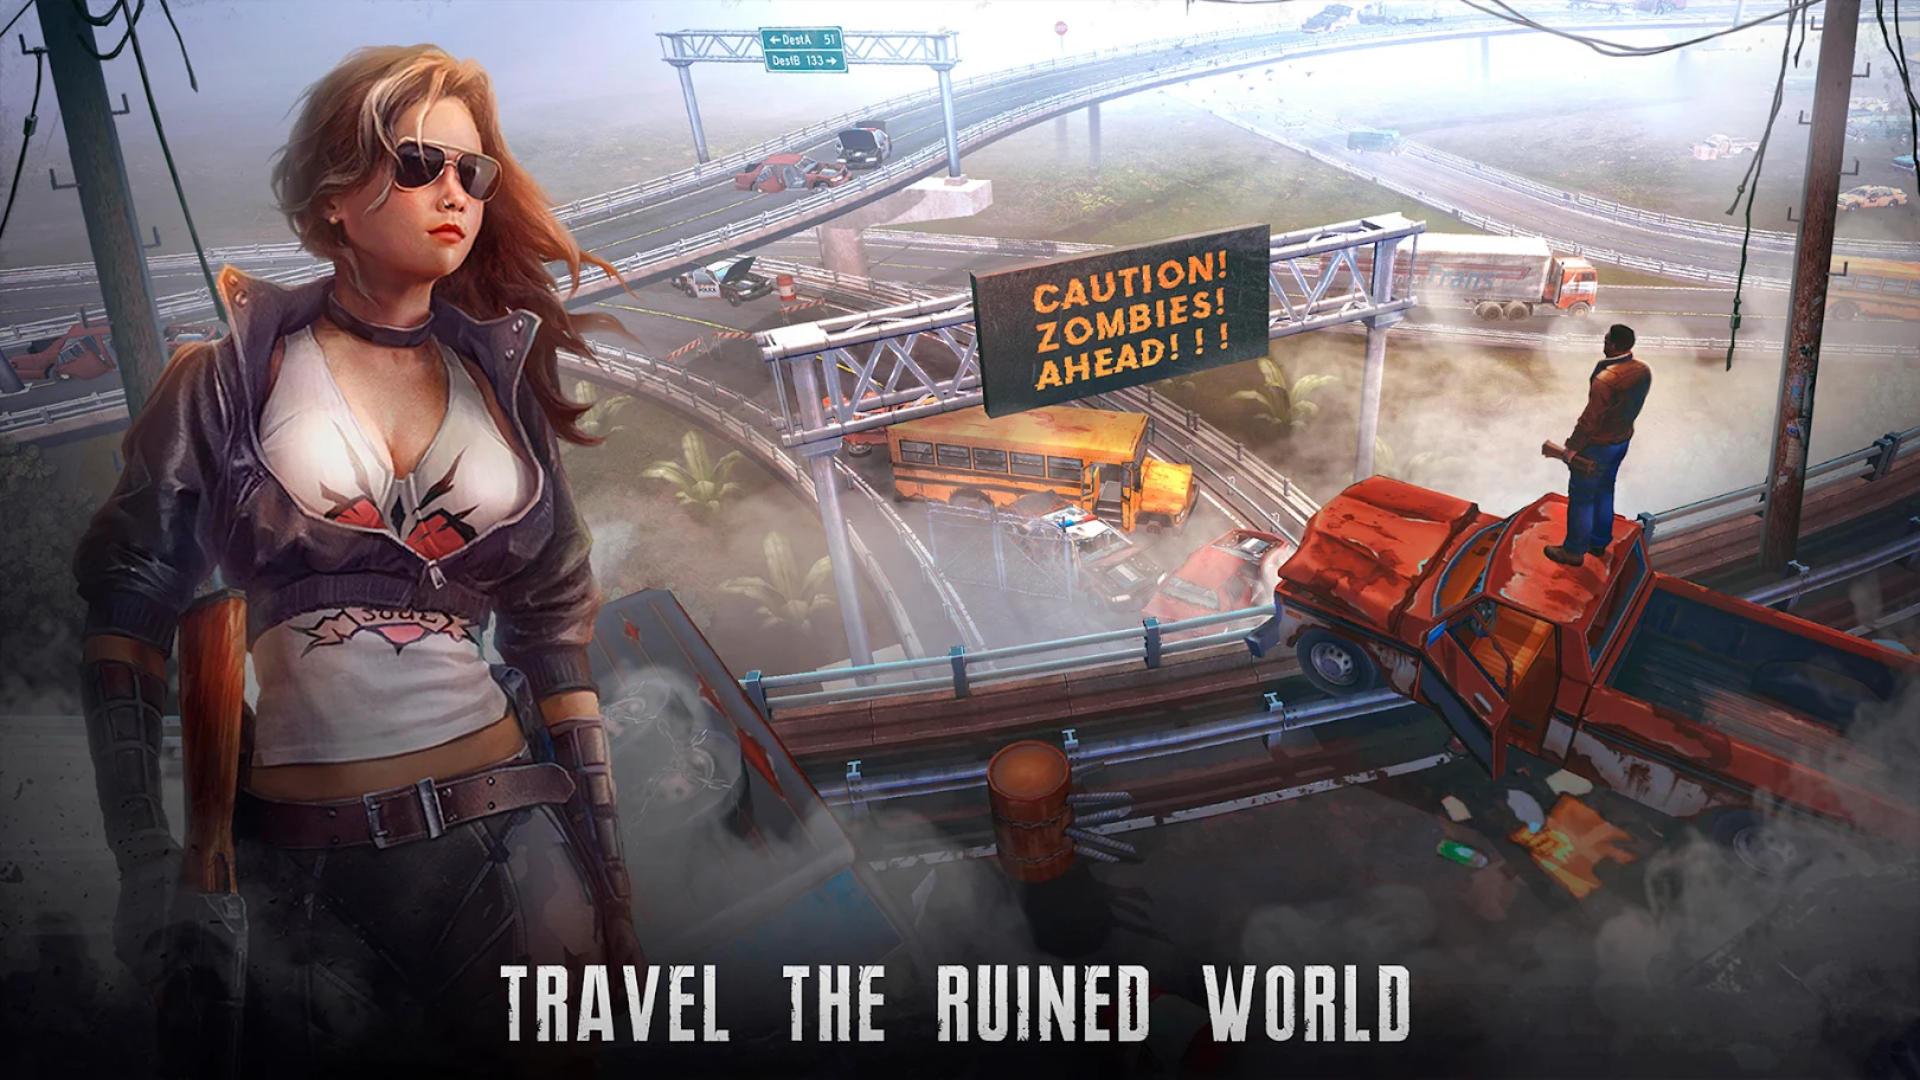 Game Survival Terbaik Di Seluler: Live atau Die. Gambar menunjukkan gambar seorang wanita di kacamata hitam di dekat jalan bebas hambatan yang ditinggalkan, dengan teks